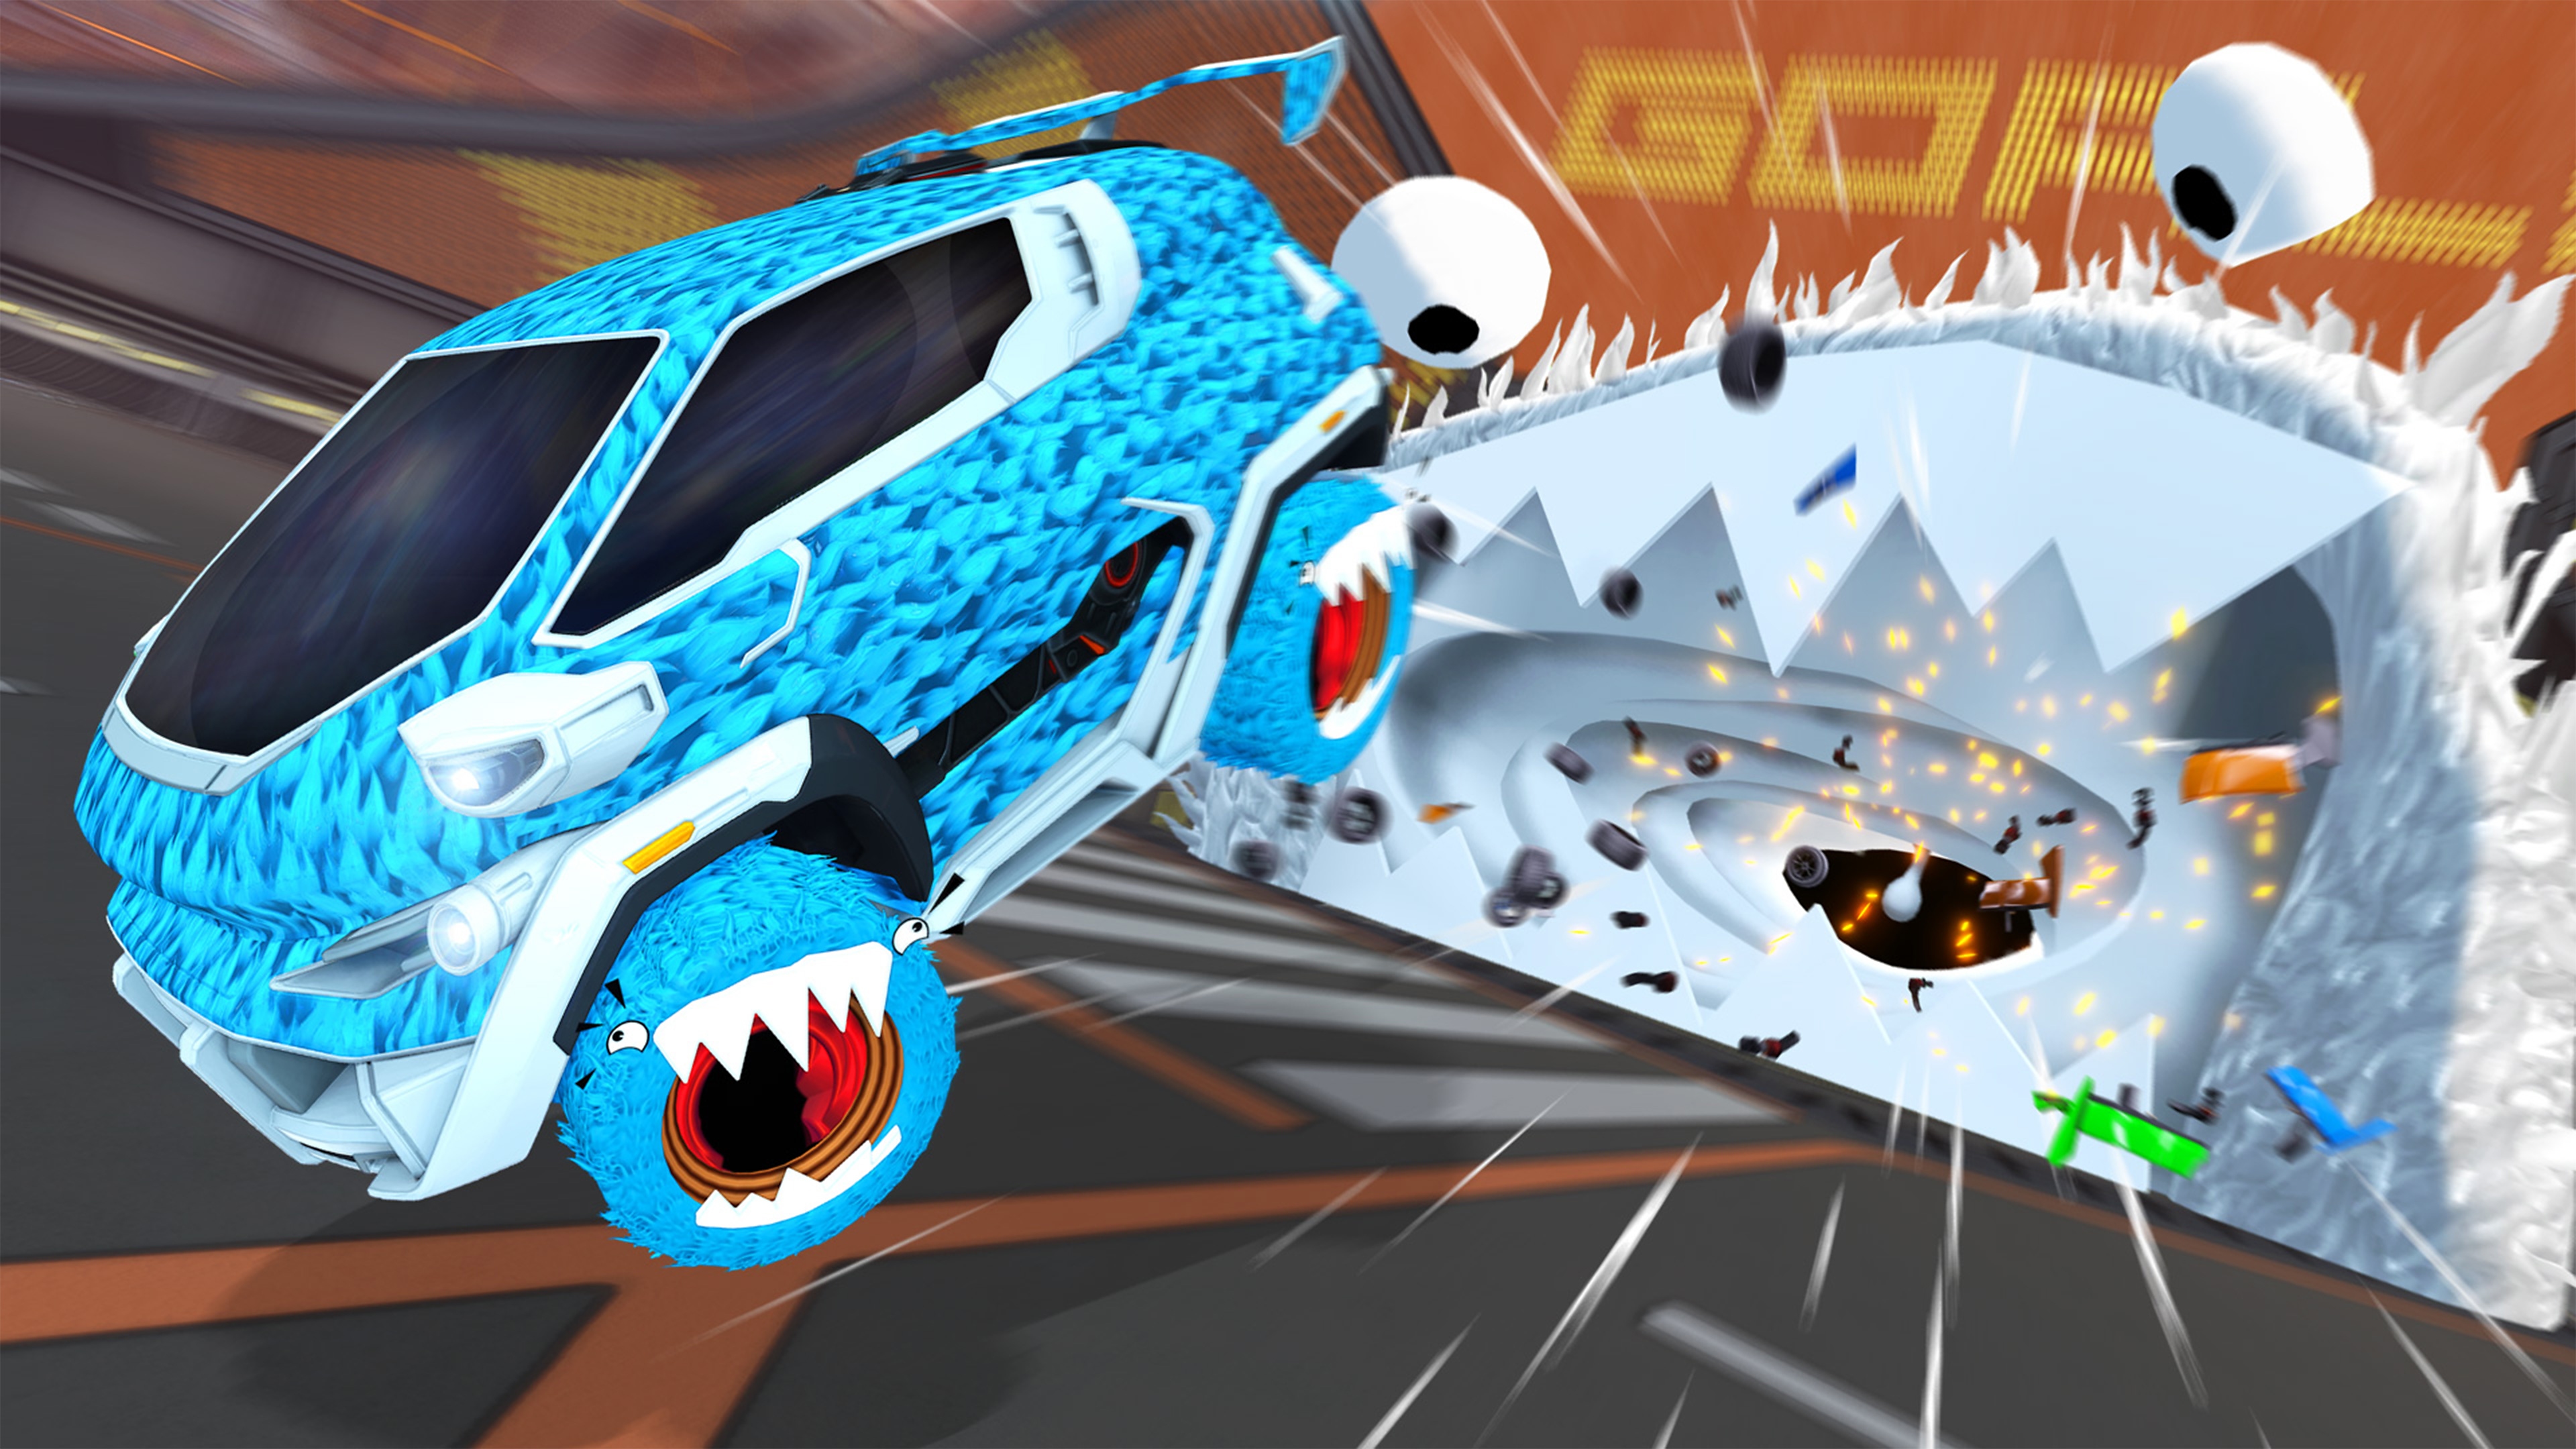 Screenshot zu Saison 6 von Rocket League, der zwei Autos zeigt, die auf den Bildschirm zufliegen.